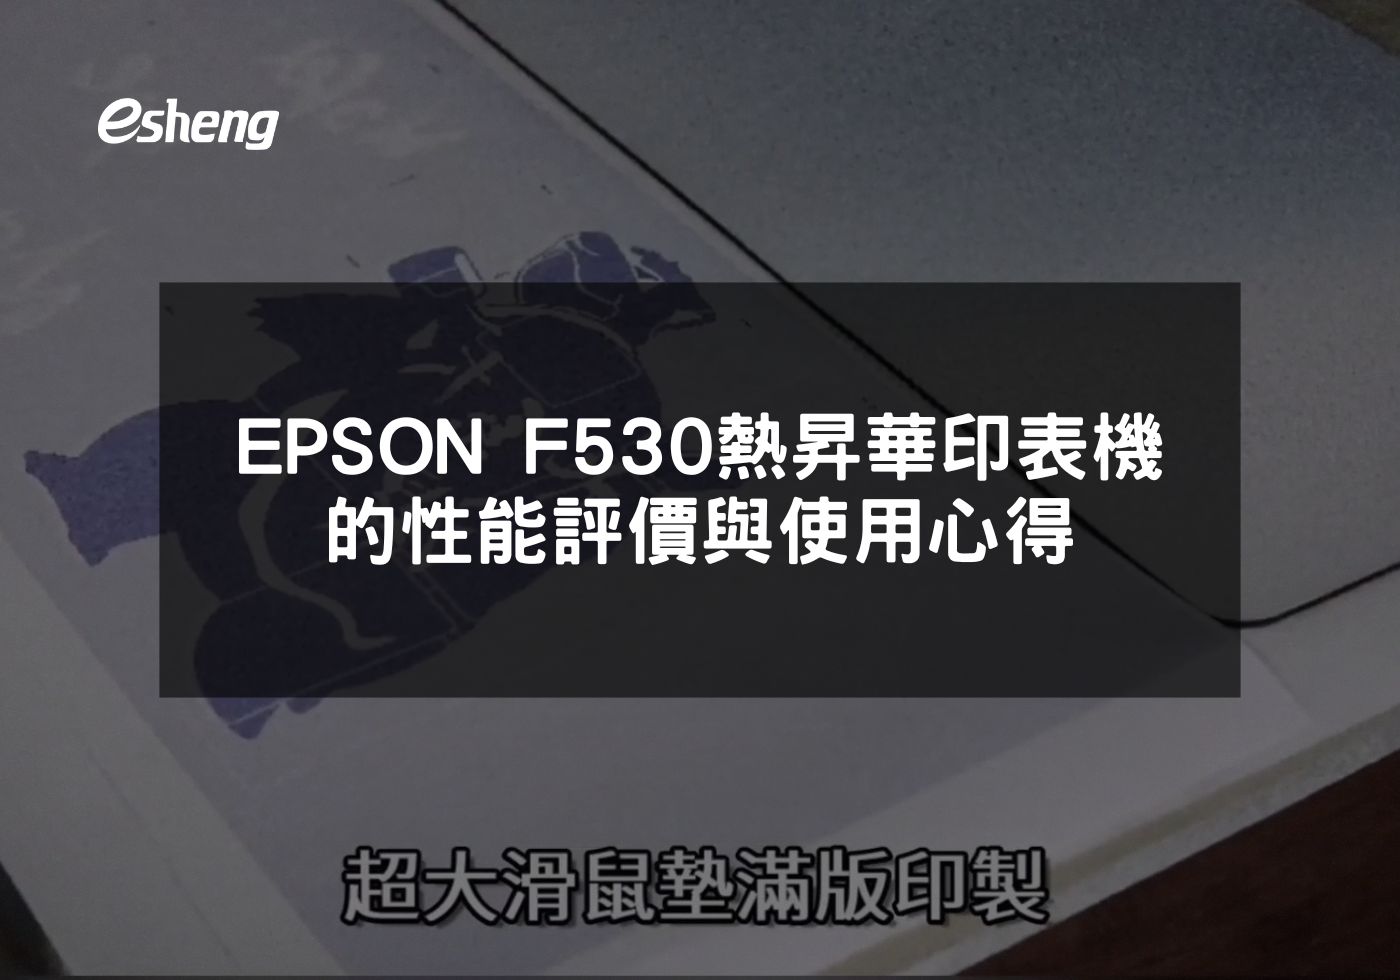 閱讀更多文章 EPSON F530熱昇華印表機的性能評價與使用心得